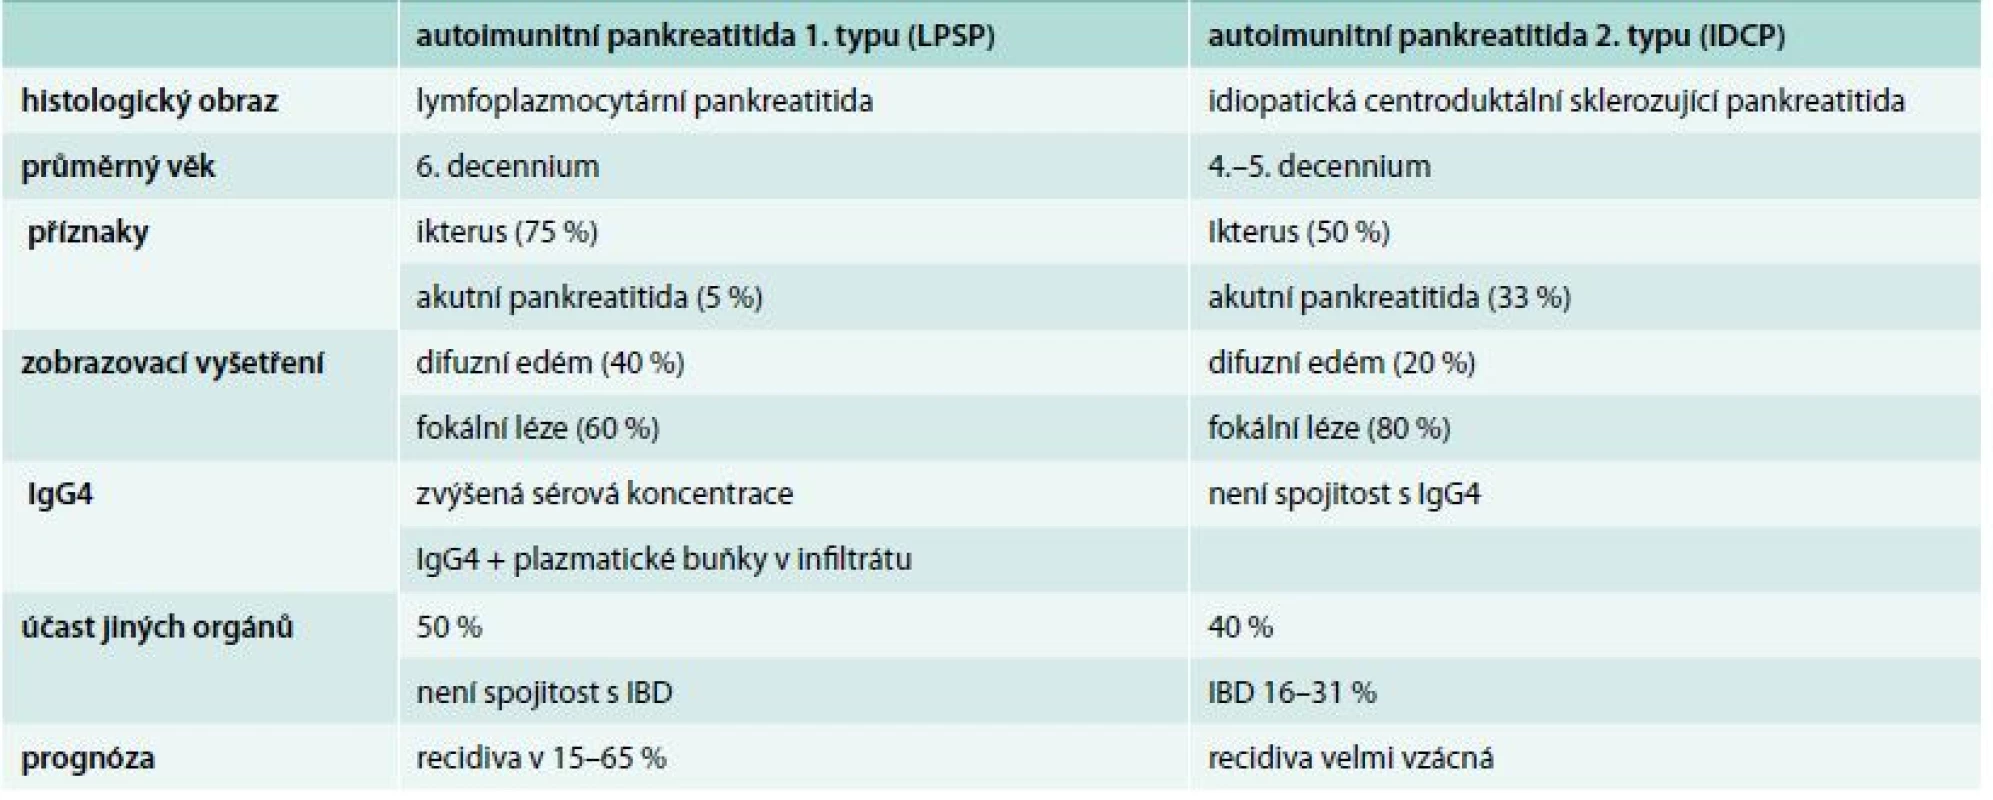 Přehled klinických charakteristik autoimunitní pankreatitidy 1. a 2. typu